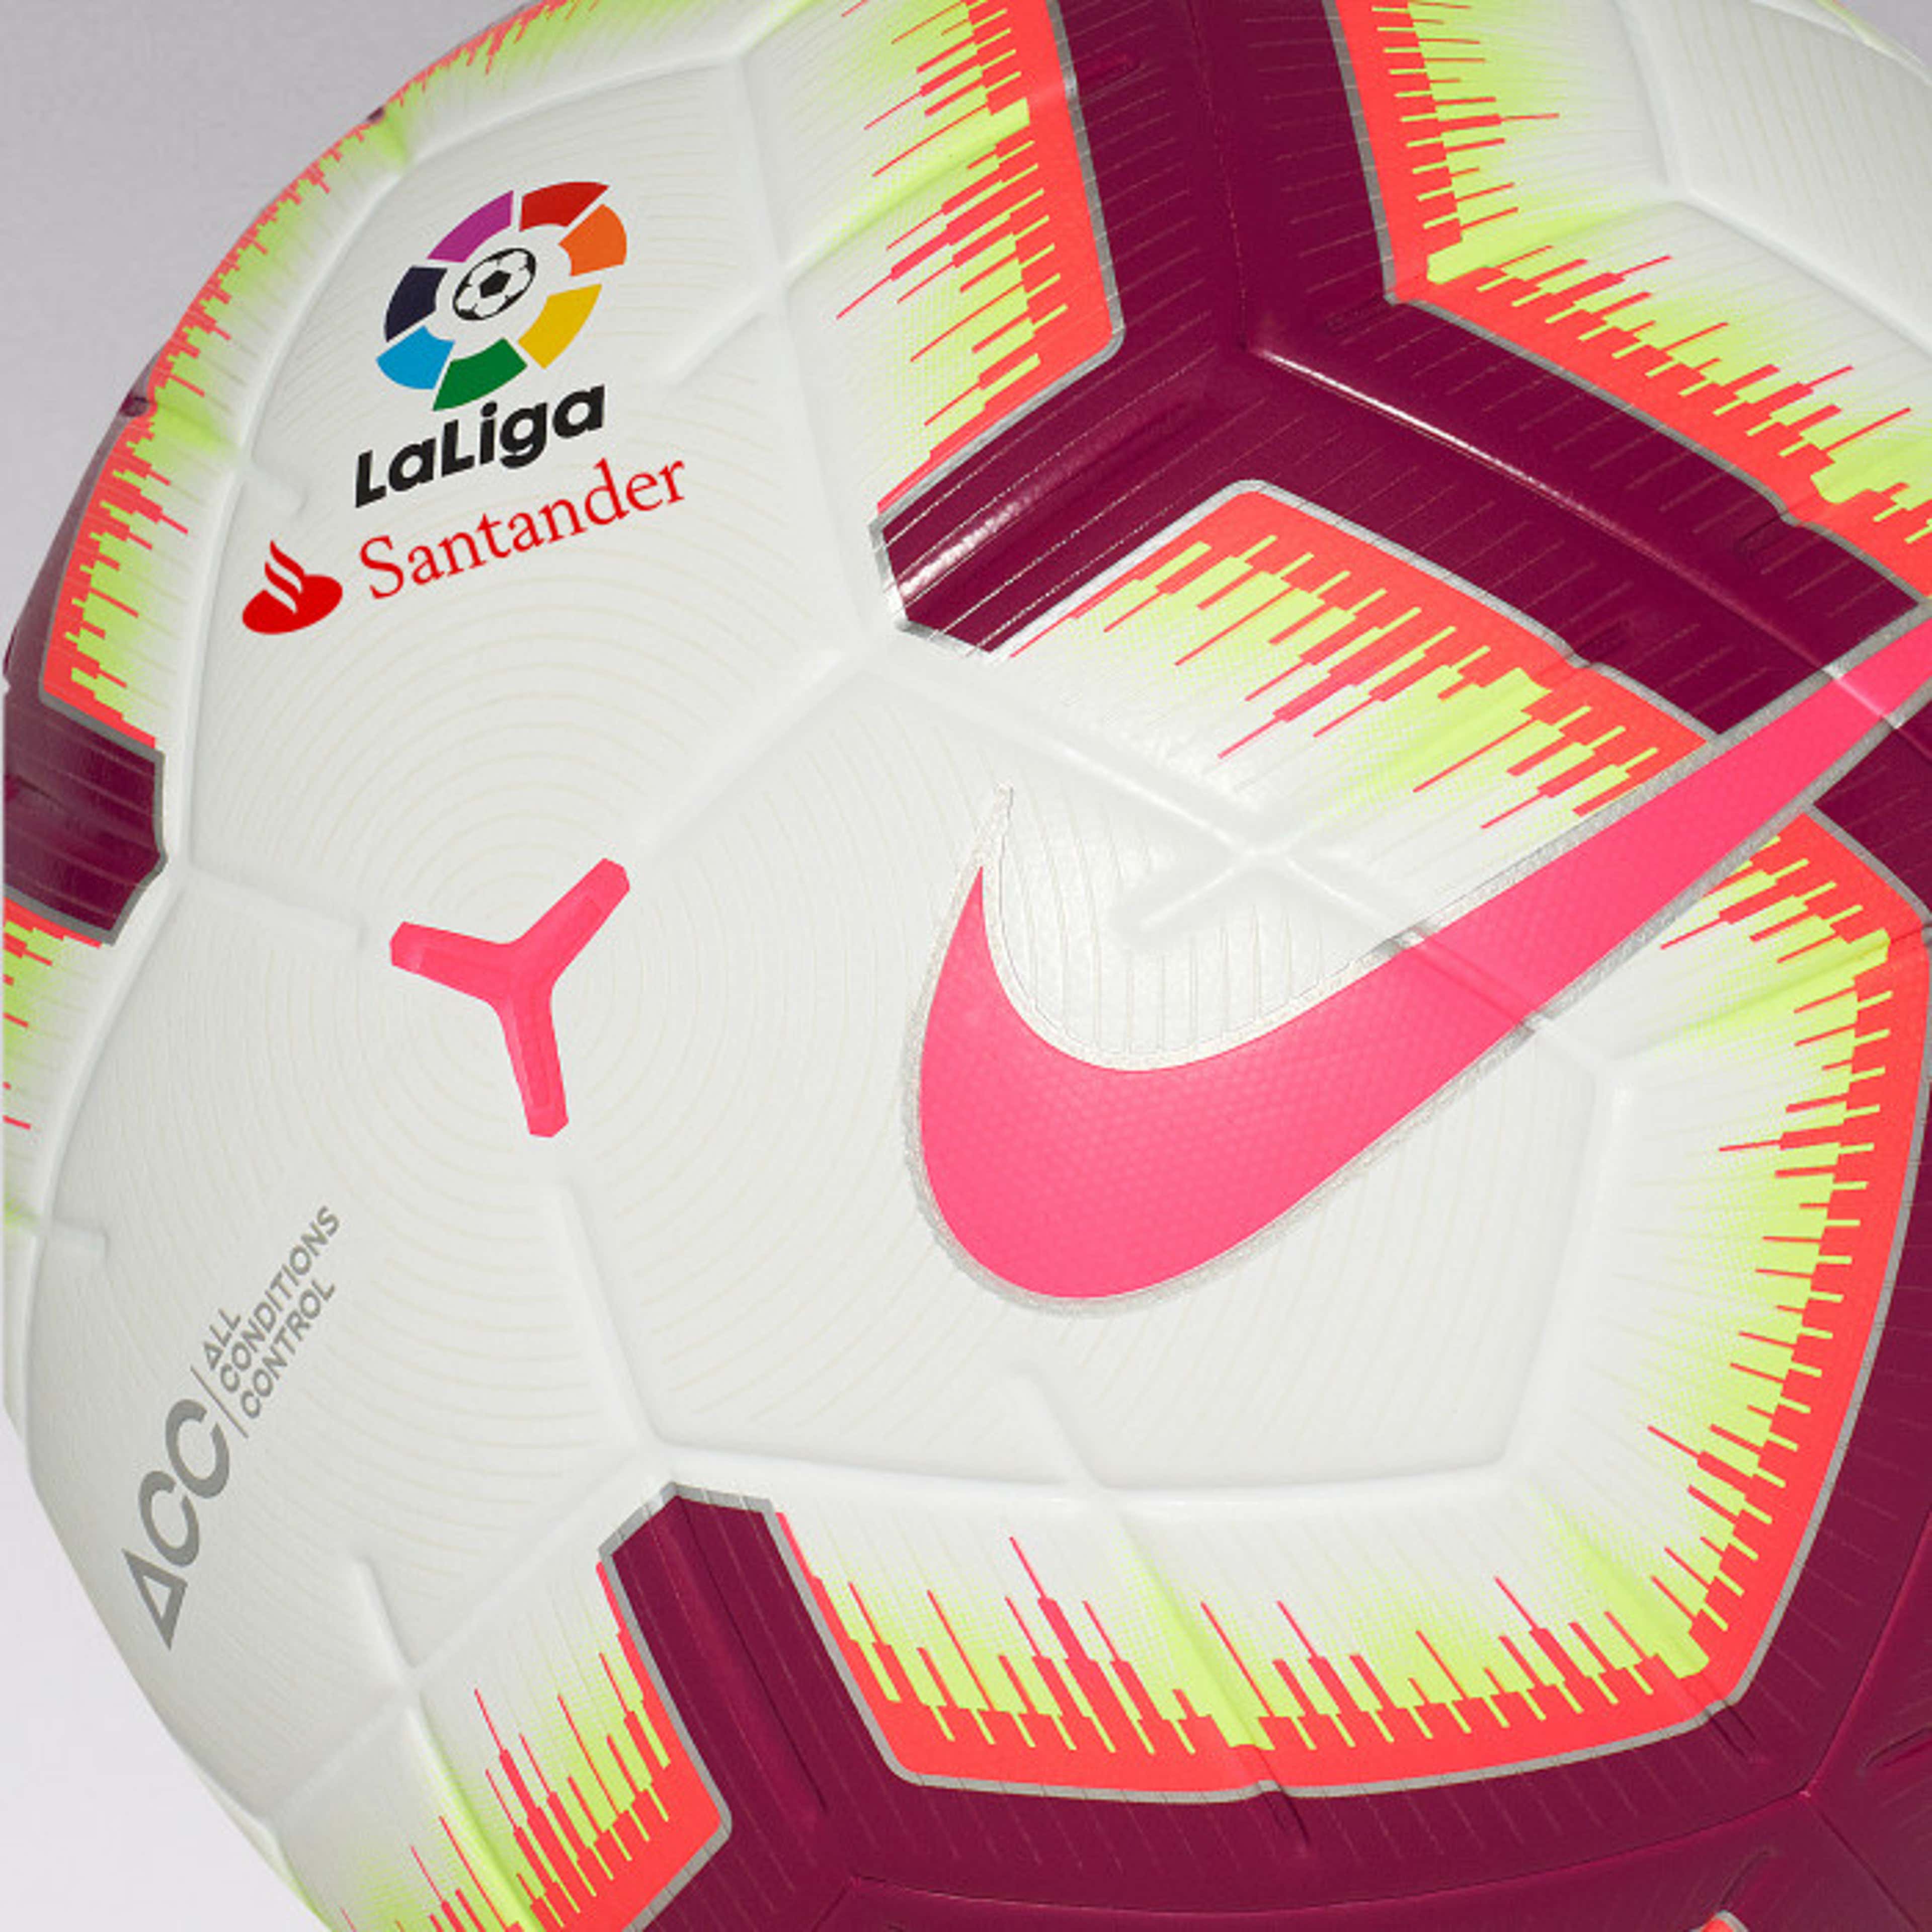 es la pelota oficial de LaLiga Santander para la temporada 2018-2019? Costo, y | Goal.com